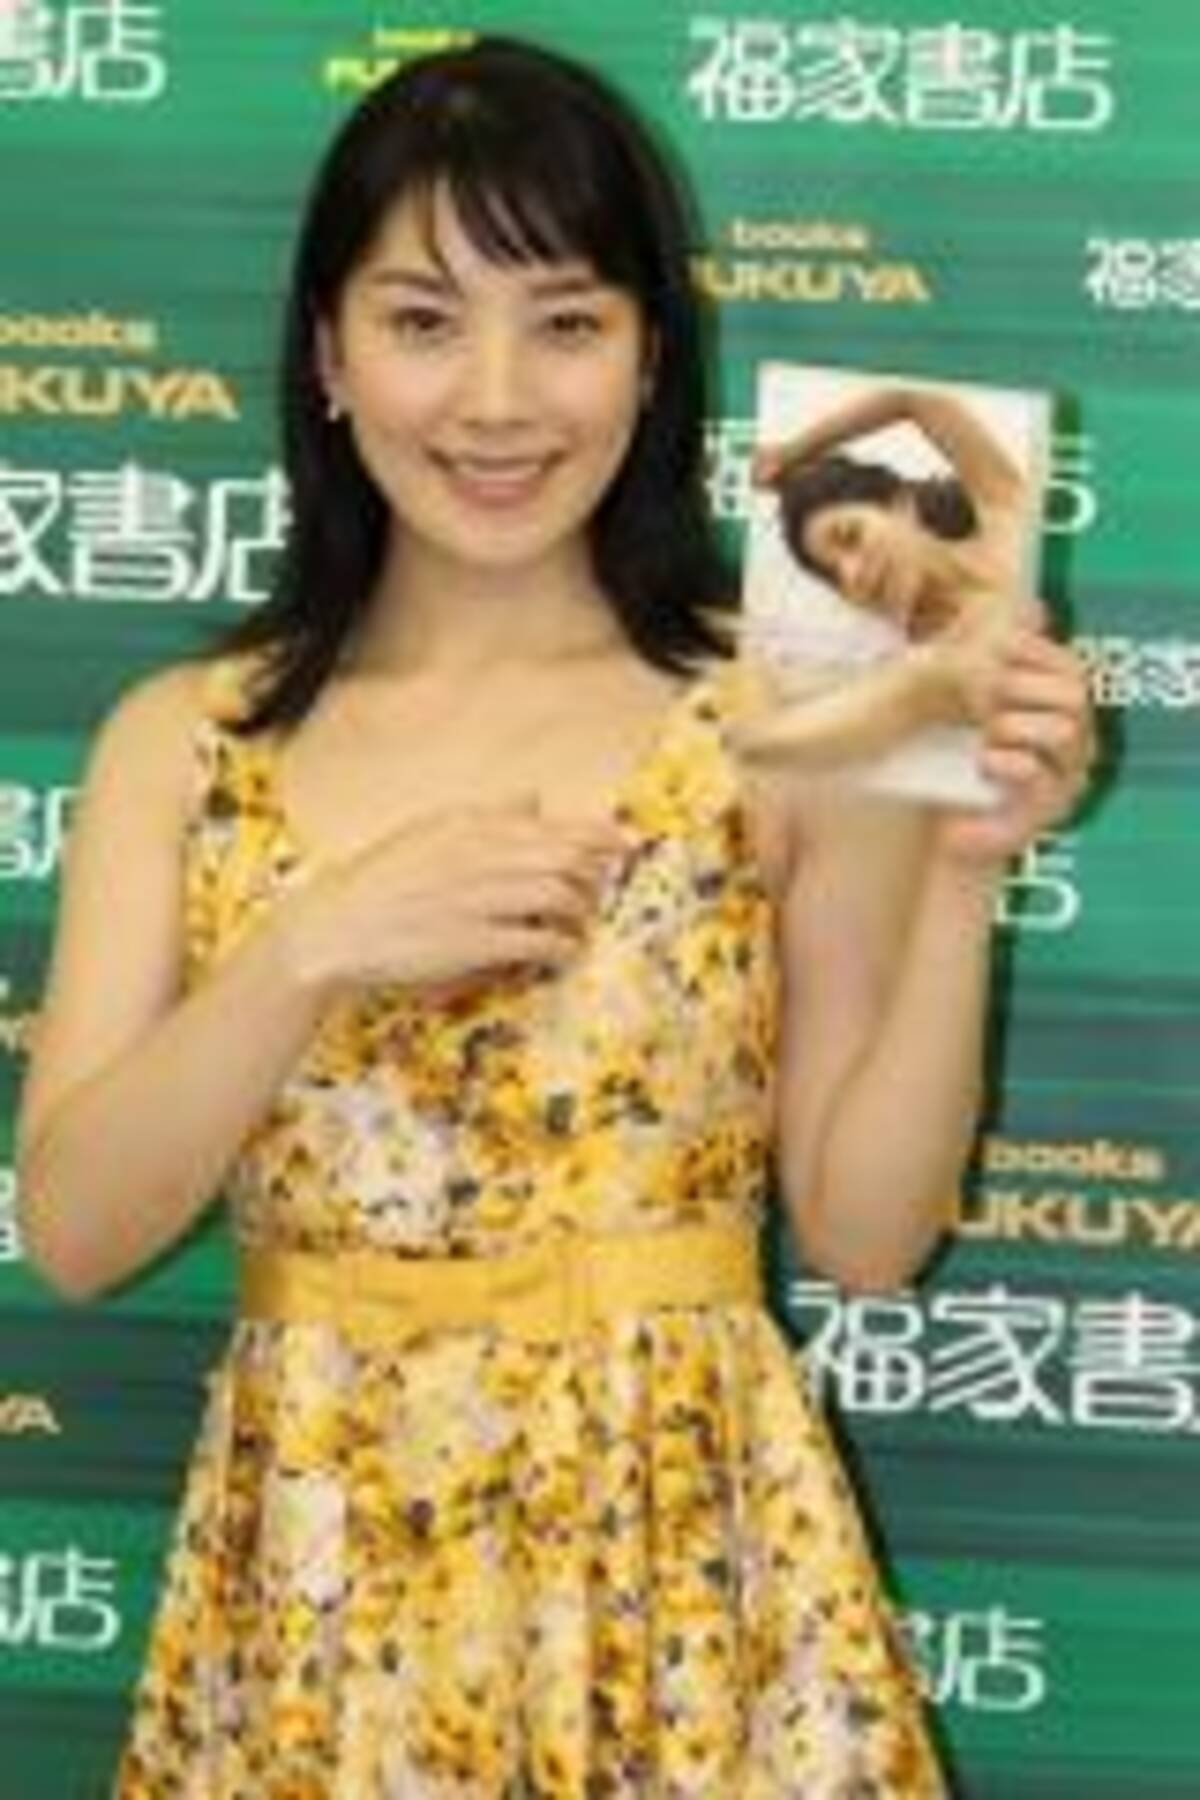 ヌードで馬乗り 嘉門洋子 初ヌードdvdの思い出を語る 12年4月9日 エキサイトニュース